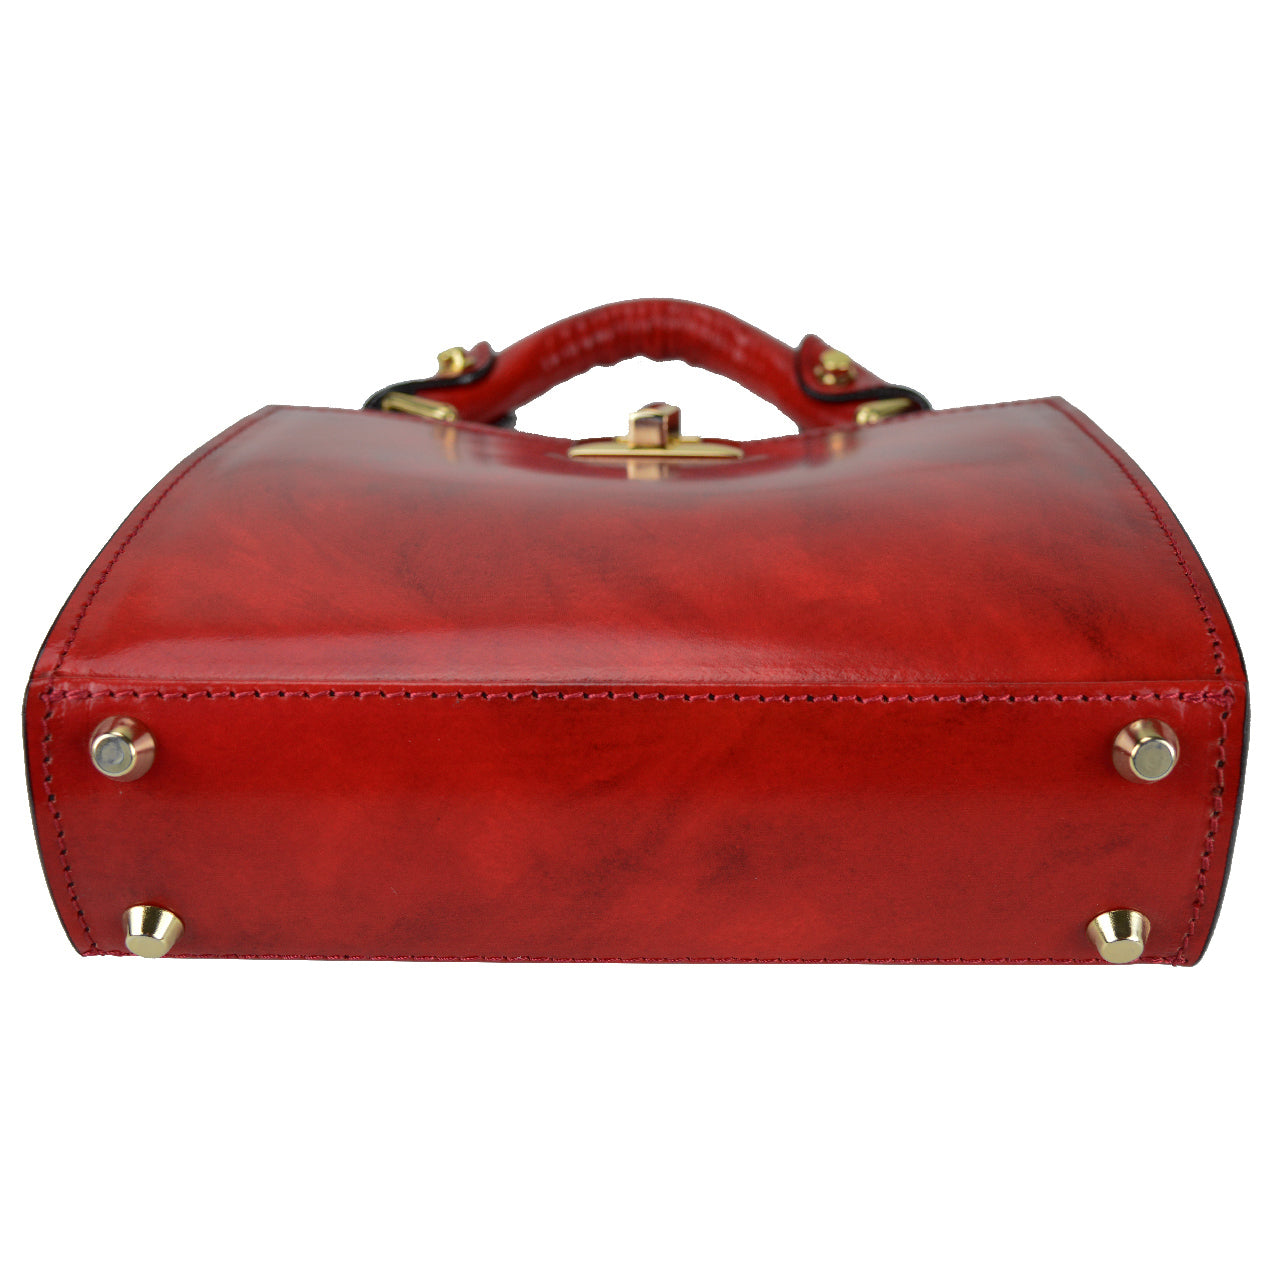 Pratesi Anna Maria Luisa de' Medici Small Lady Bag in genuine Italian leather - Brunelleschi Leather Cherry